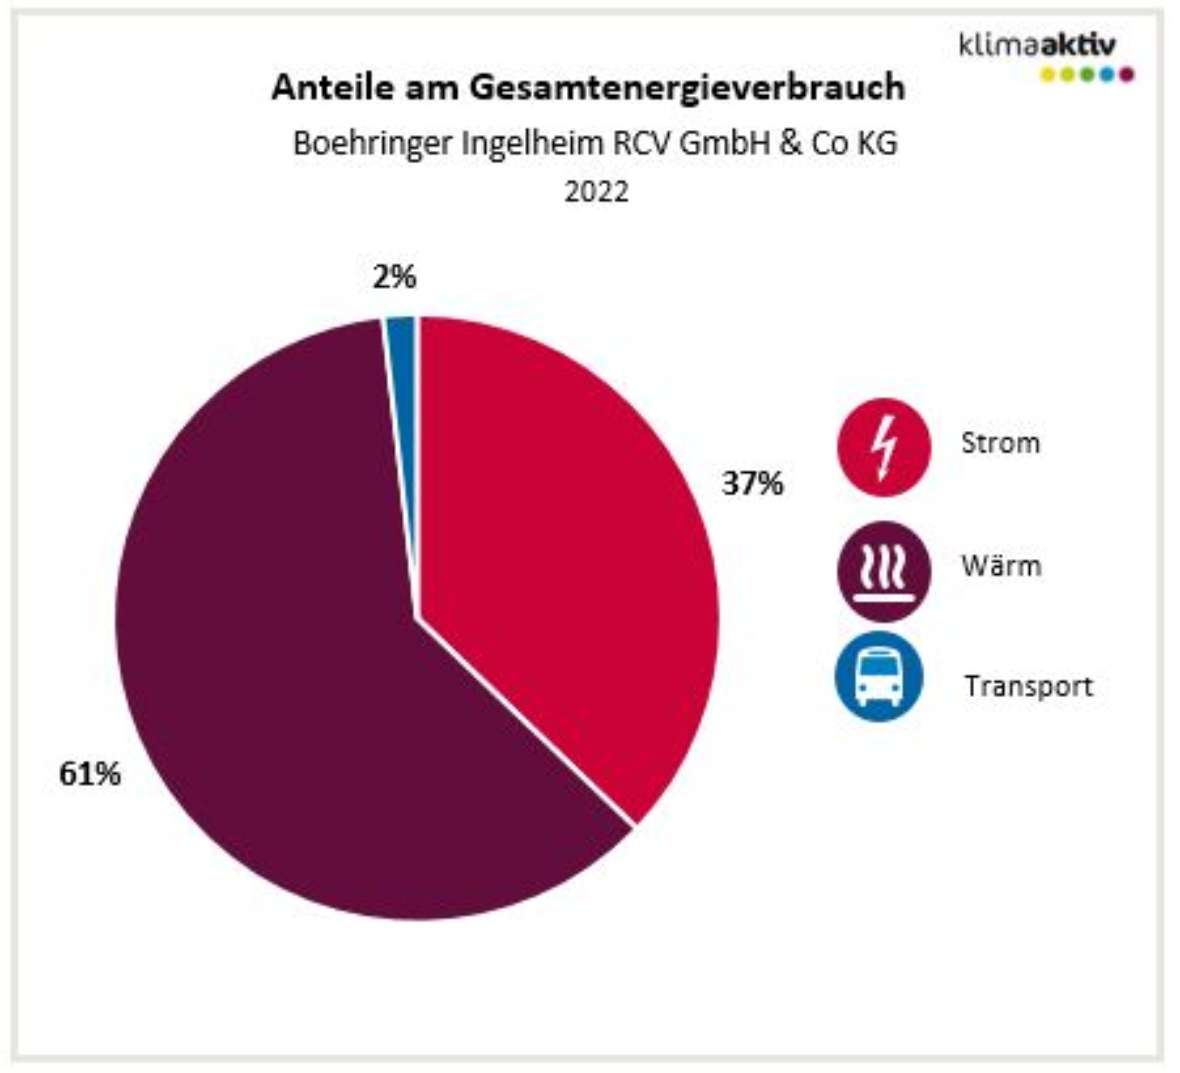 Anteile am Gesamtenergieverbrauch (Stand 2022, Boehringer Ingelheim), Strom 37 %,  Wärme 61%, Transport 2 %